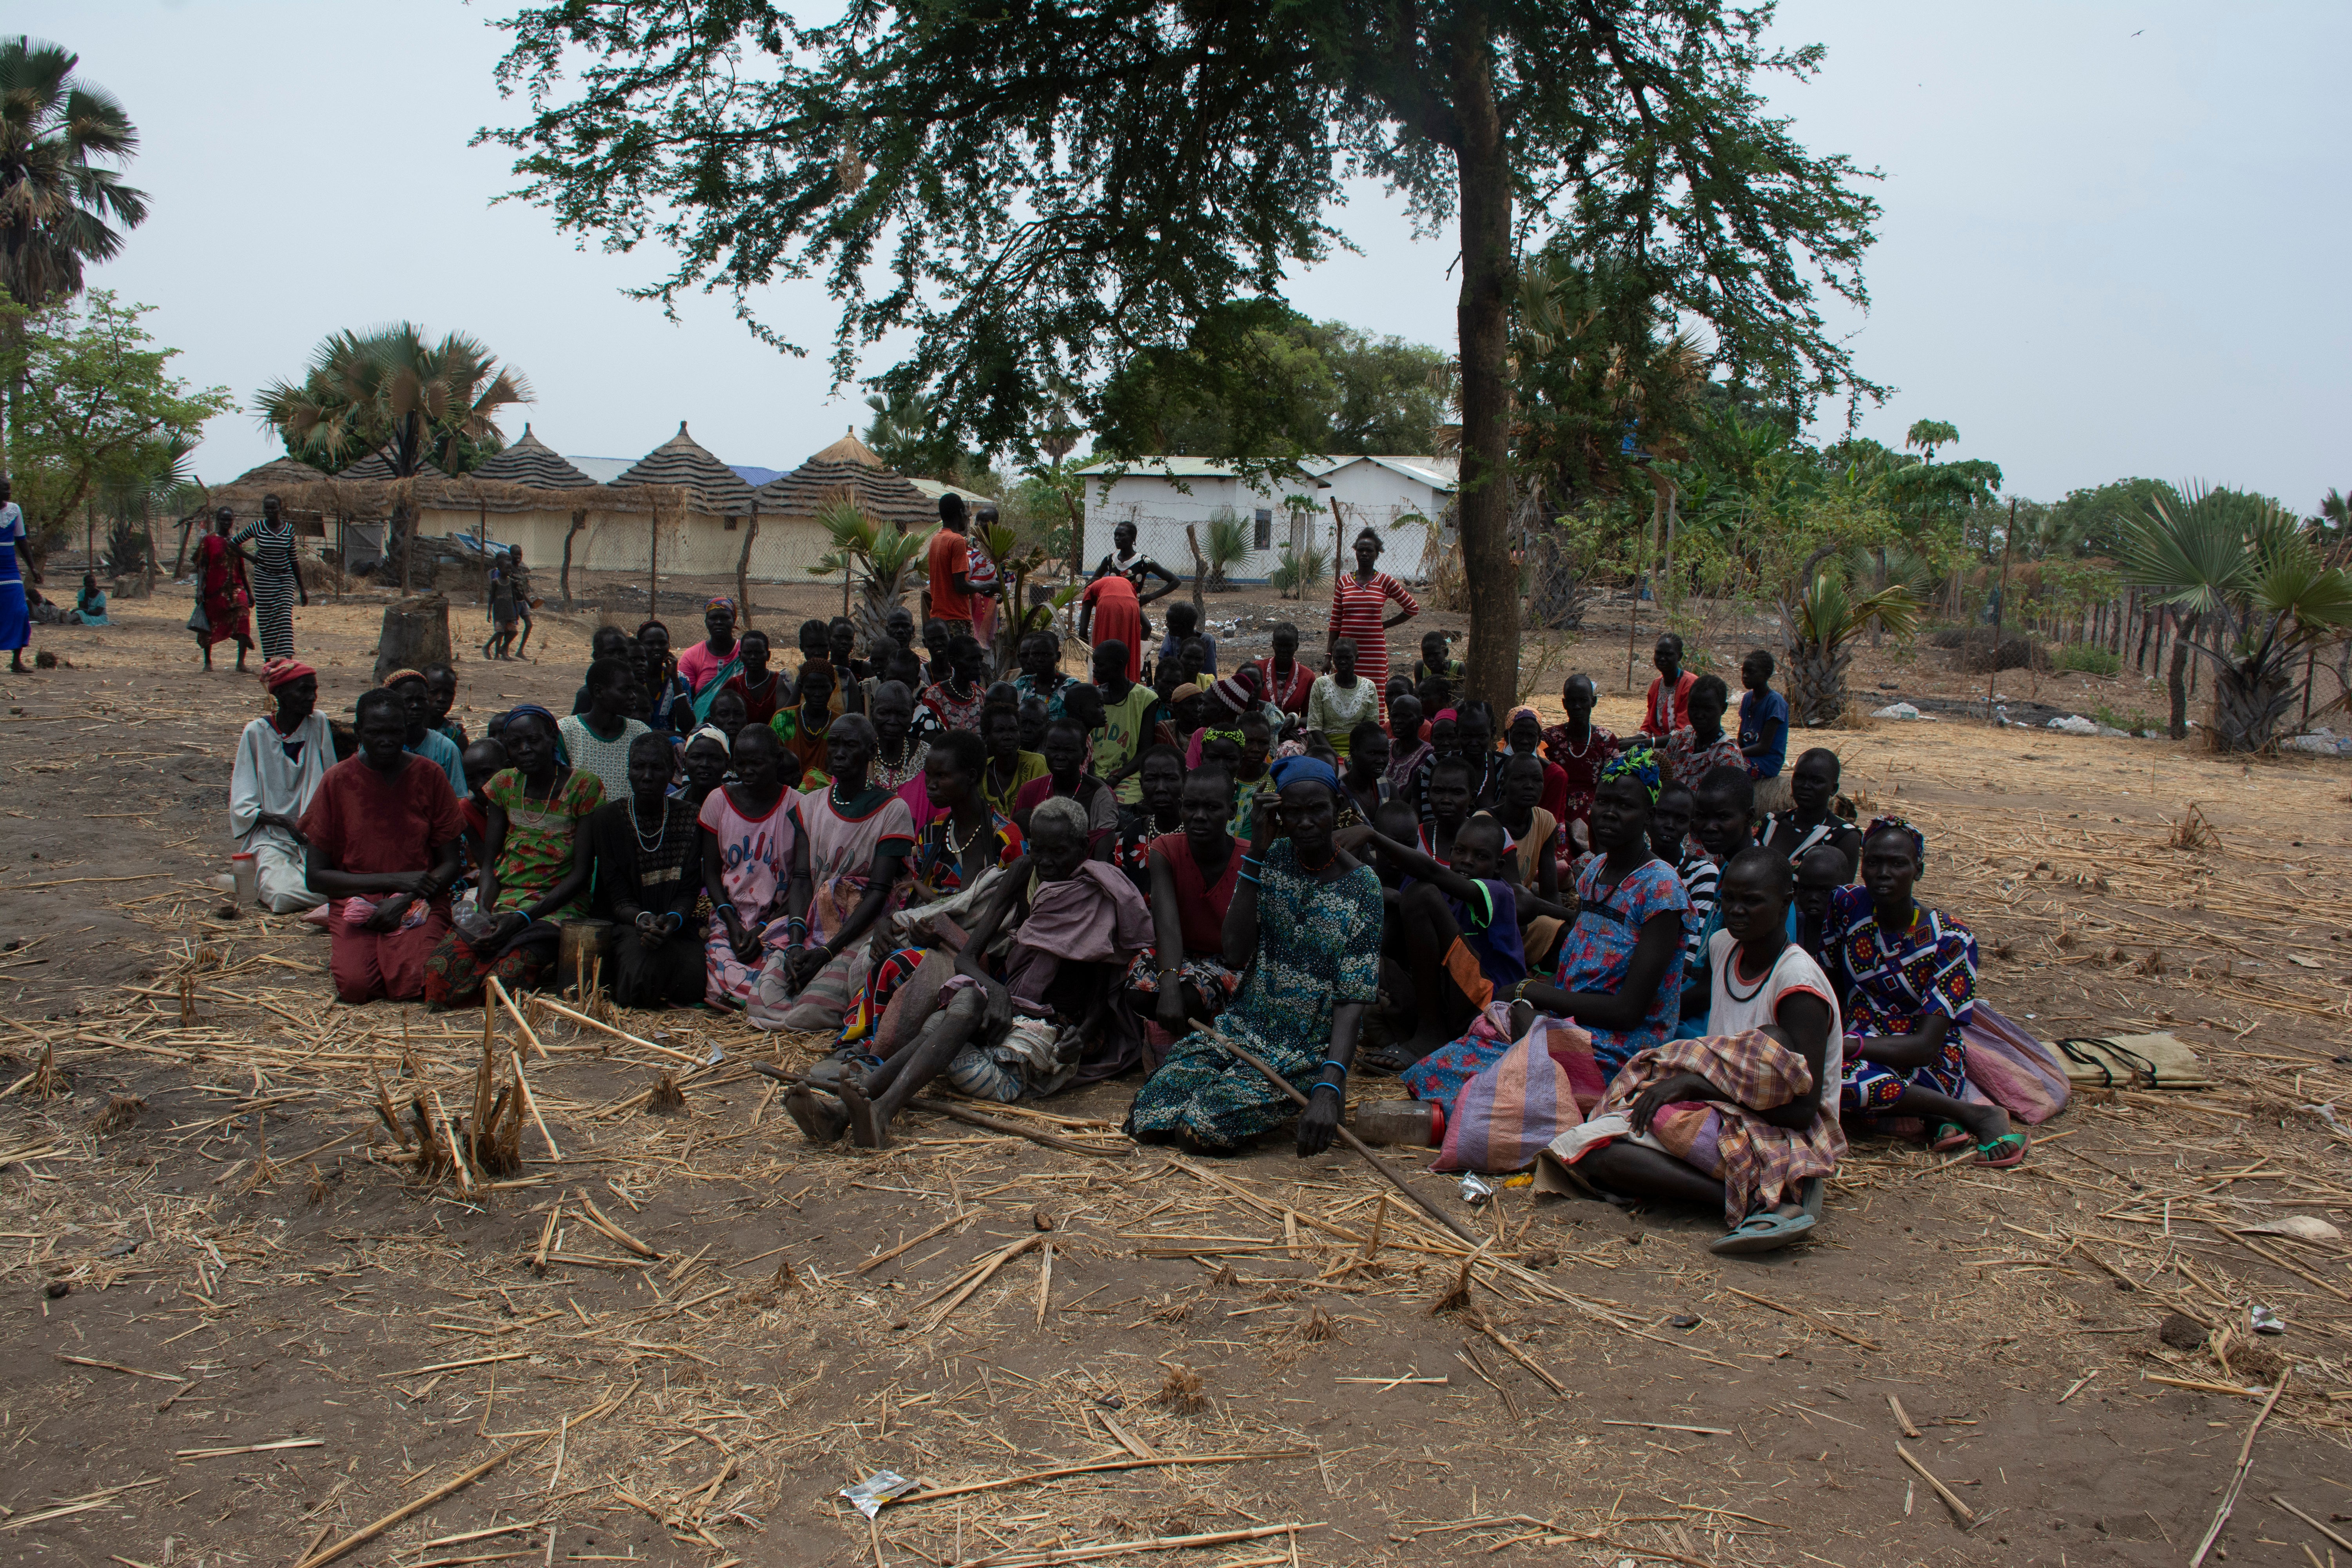 Ryhmä maan sisäisiä pakolaisia Achol Akechin kylässä odottamassa ruoka-apua. He ovat olleet pakolaisina kolme kuukautta, eikä heillä ole riittäviä selviytymiskeinoja. Väkivalta ja konfliktit jatkuvat, mikä pakottaa heidät asumaan leirillä ja turvautumaan humanitaariseen apuun.